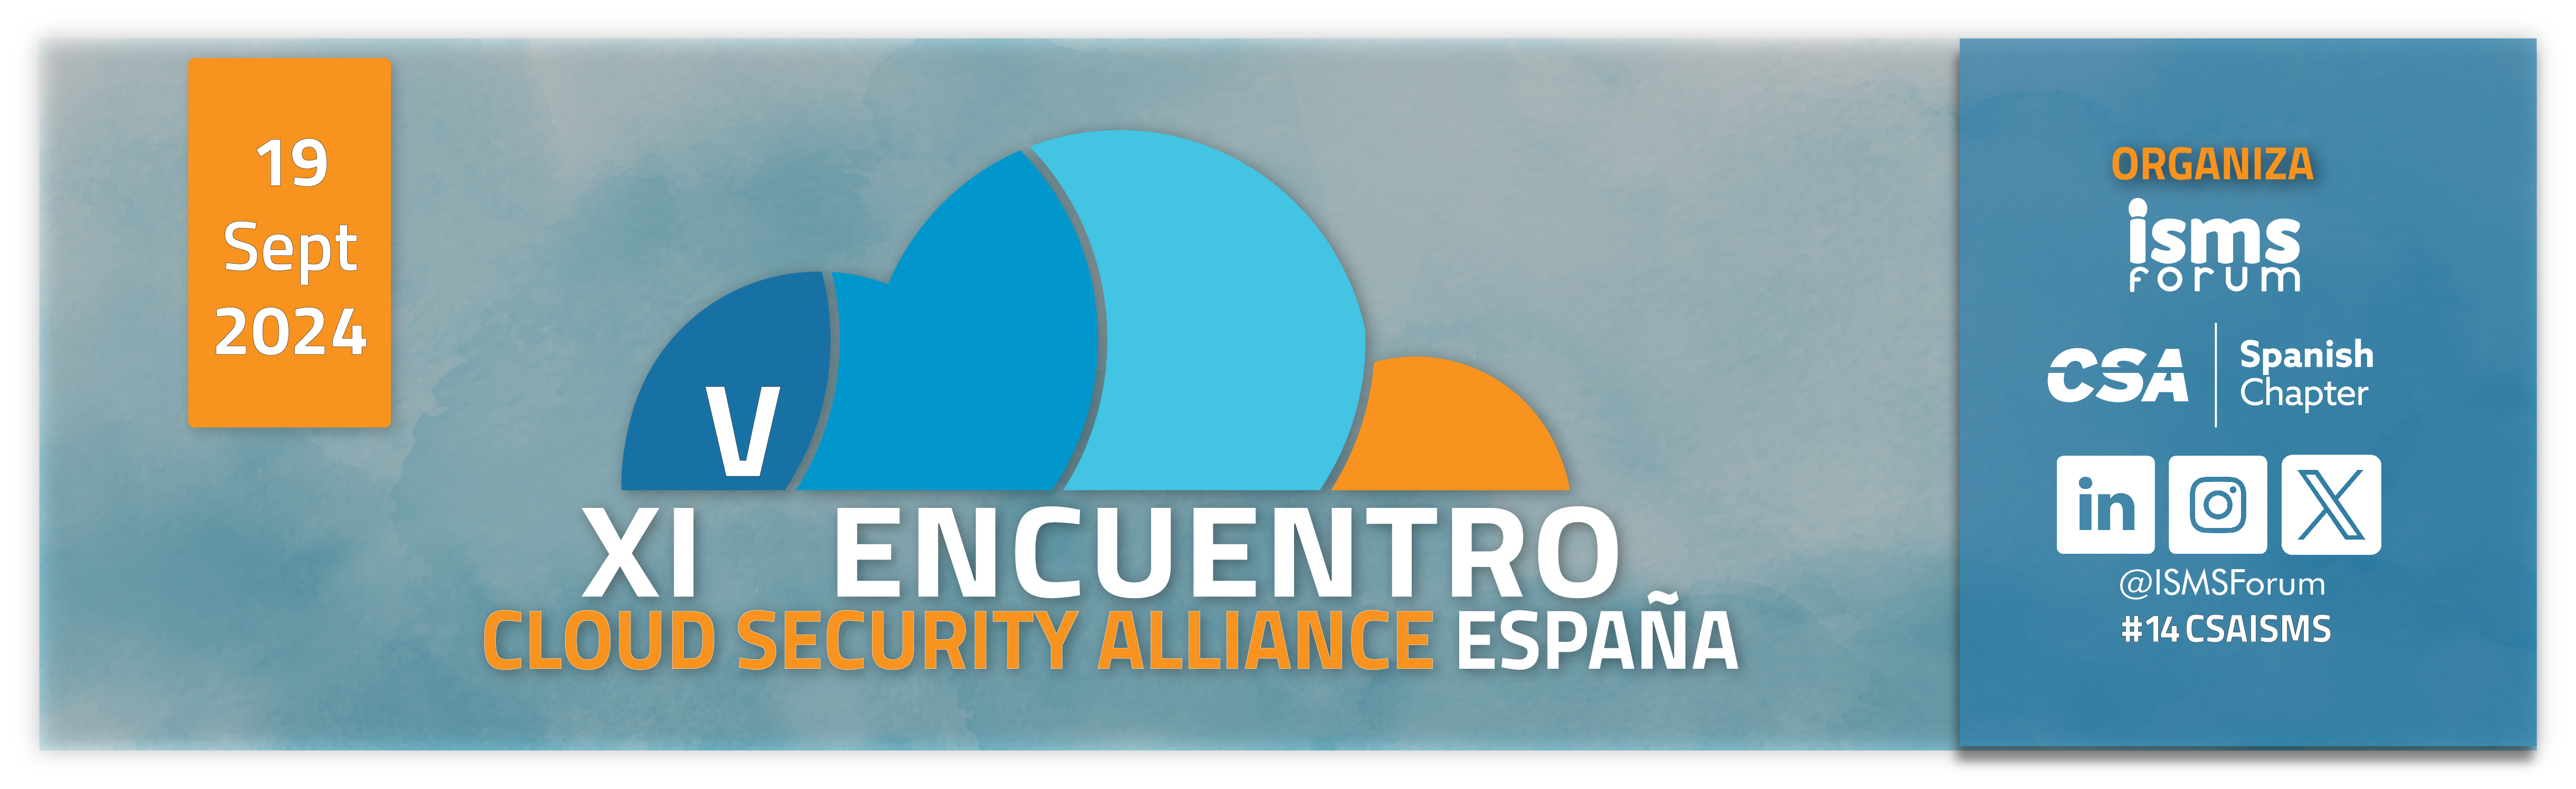 XIV Encuentro de Cloud Security Alliance Espaa 